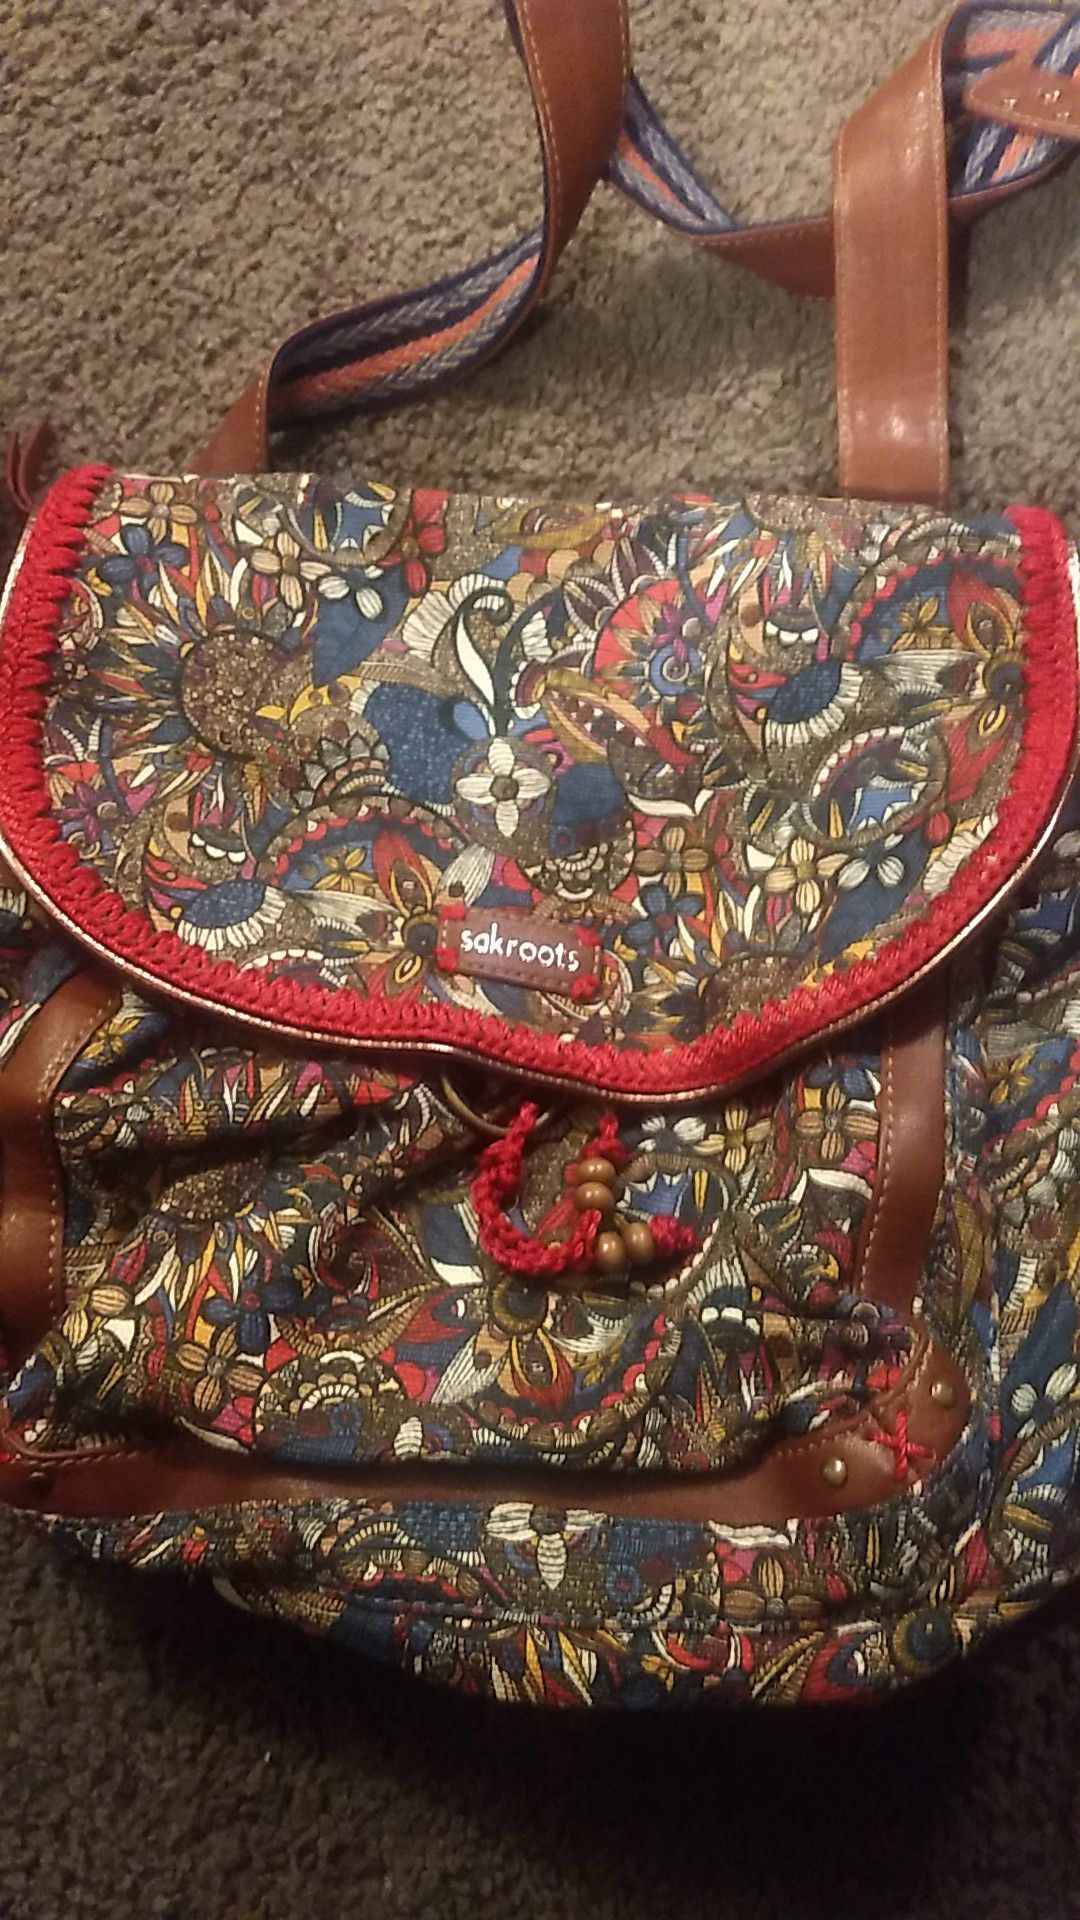 Sakroots backpack purse